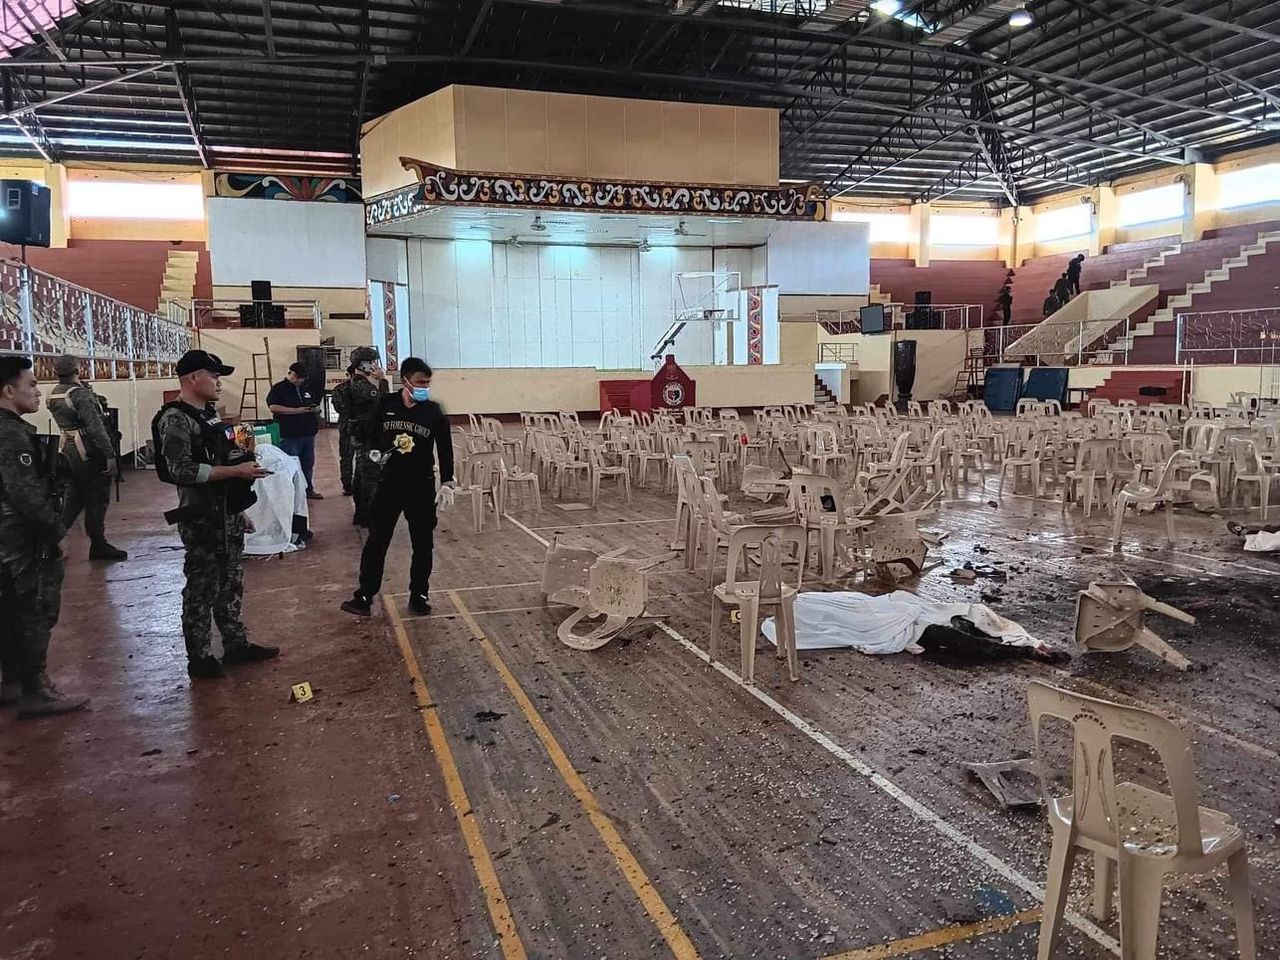 Doden bij explosie tijdens katholieke mis Filipijnen, autoriteiten spreken van terrorisme 